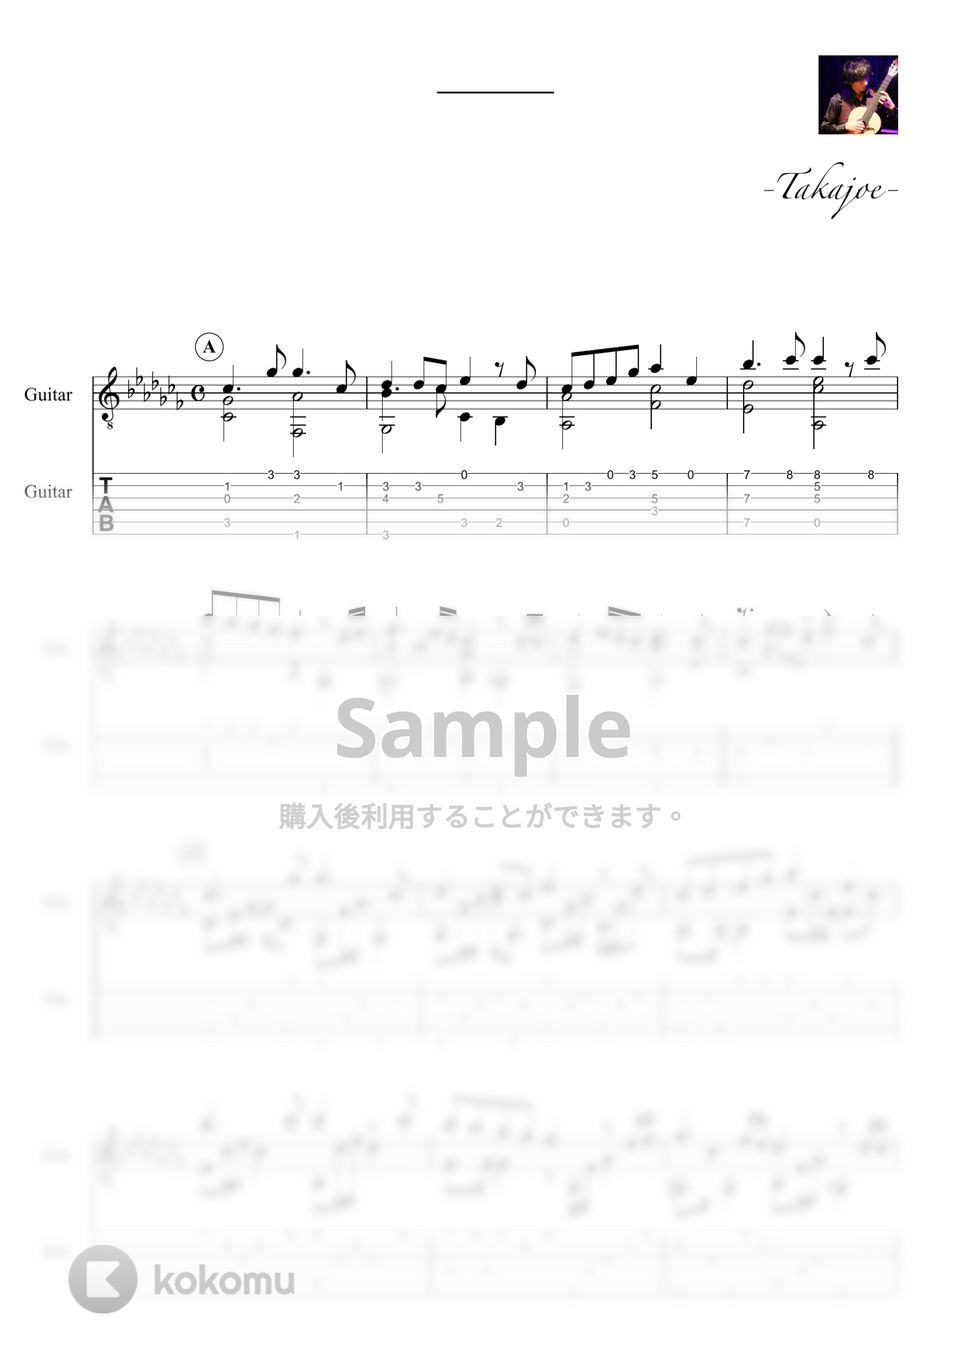 嵐 (米津玄師) - カイト by 鷹城-Takajoe-